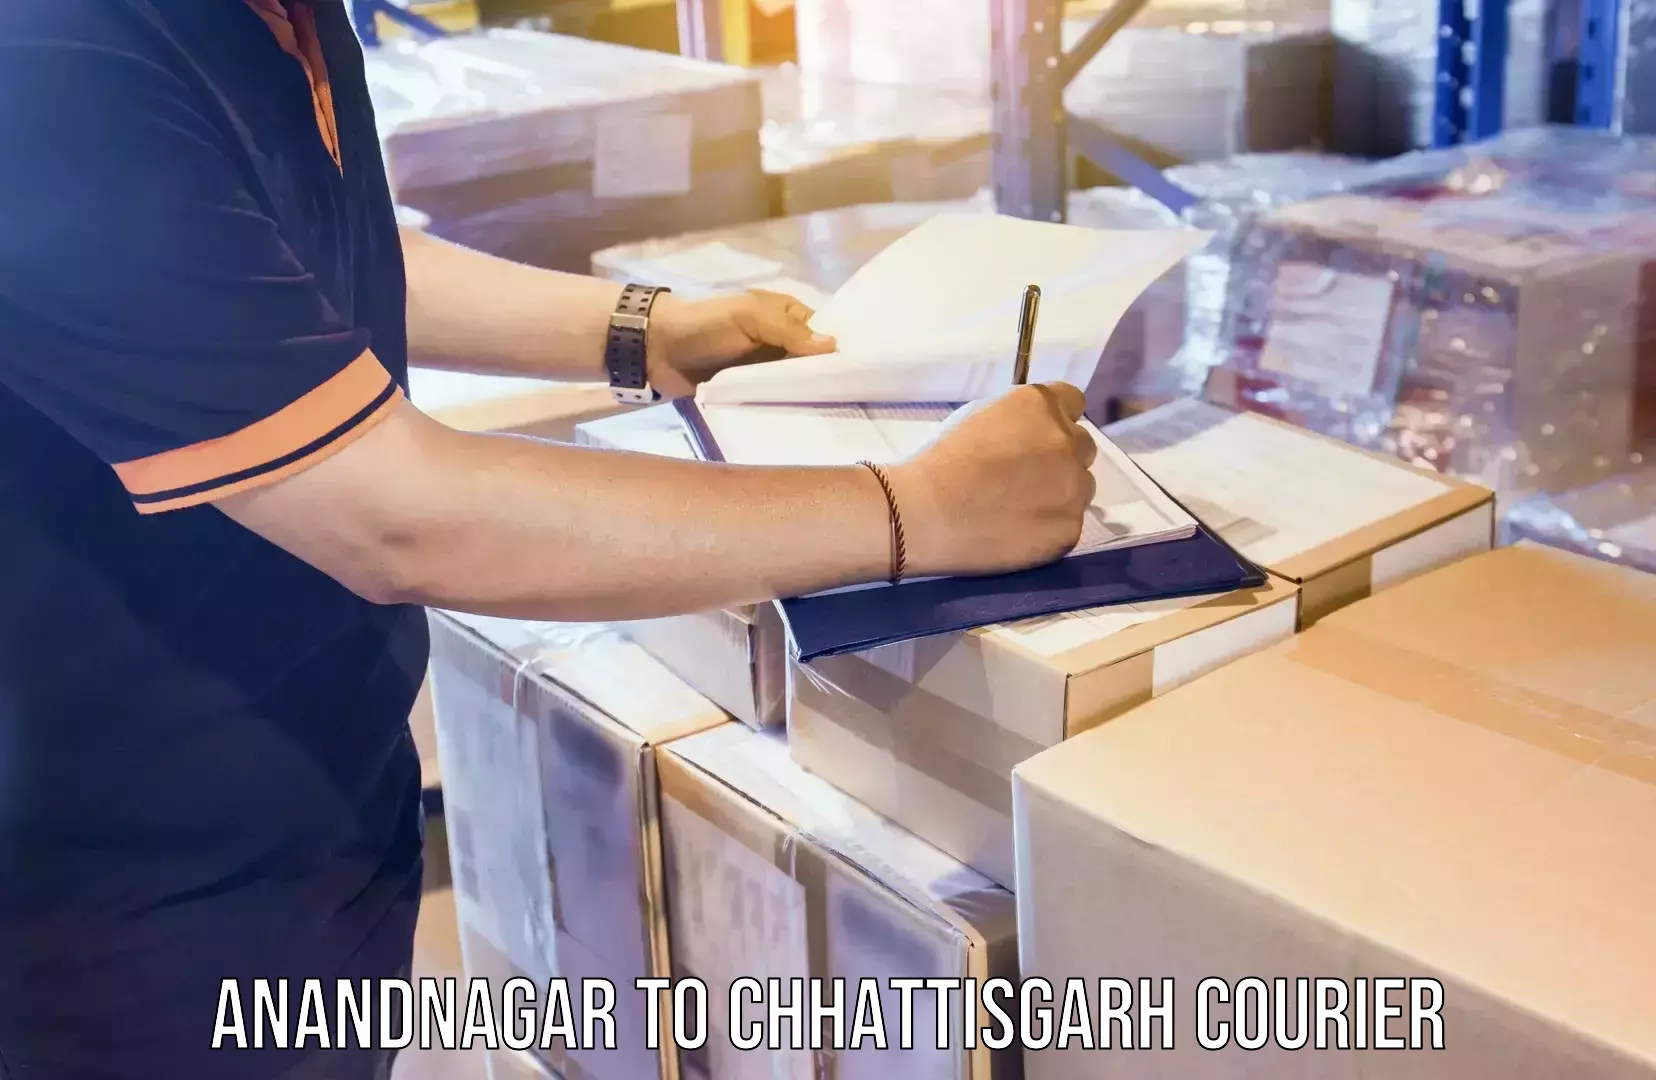 Express mail service Anandnagar to Chhattisgarh